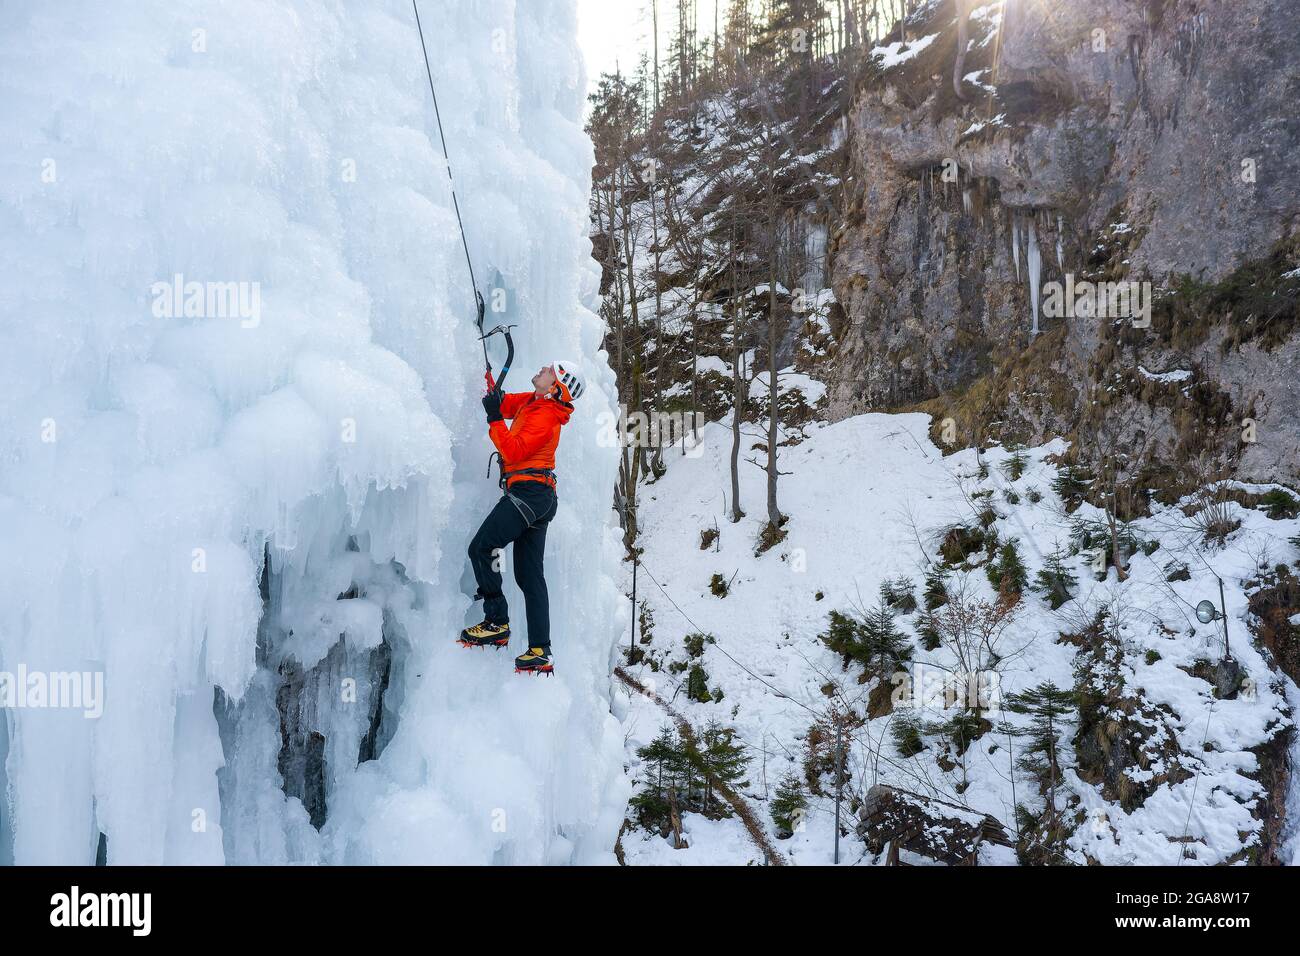 L'athlète masculin monte la falaise couverte de glace, balançant la hache de glace et en utilisant des crampons pour prendre un pied Banque D'Images